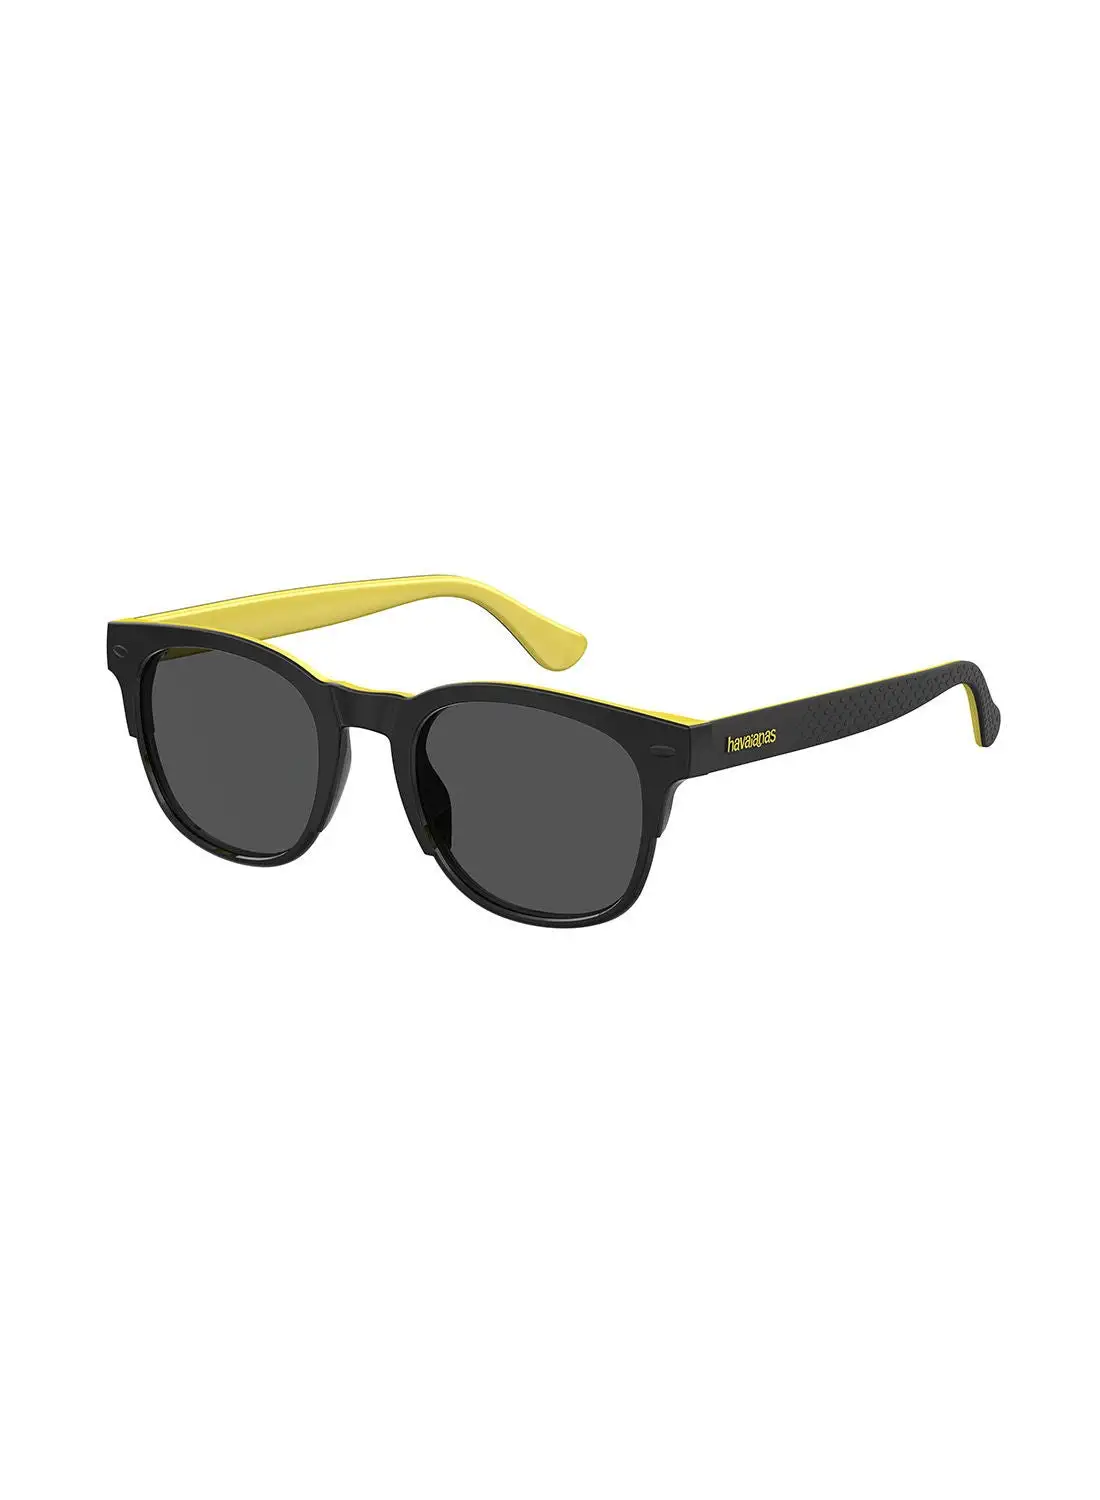 هافاياناس نظارة شمسية مربعة للجنسين للحماية من الأشعة فوق البنفسجية - Angra Blck Yllw 51 - حجم العدسة: 51 ملم